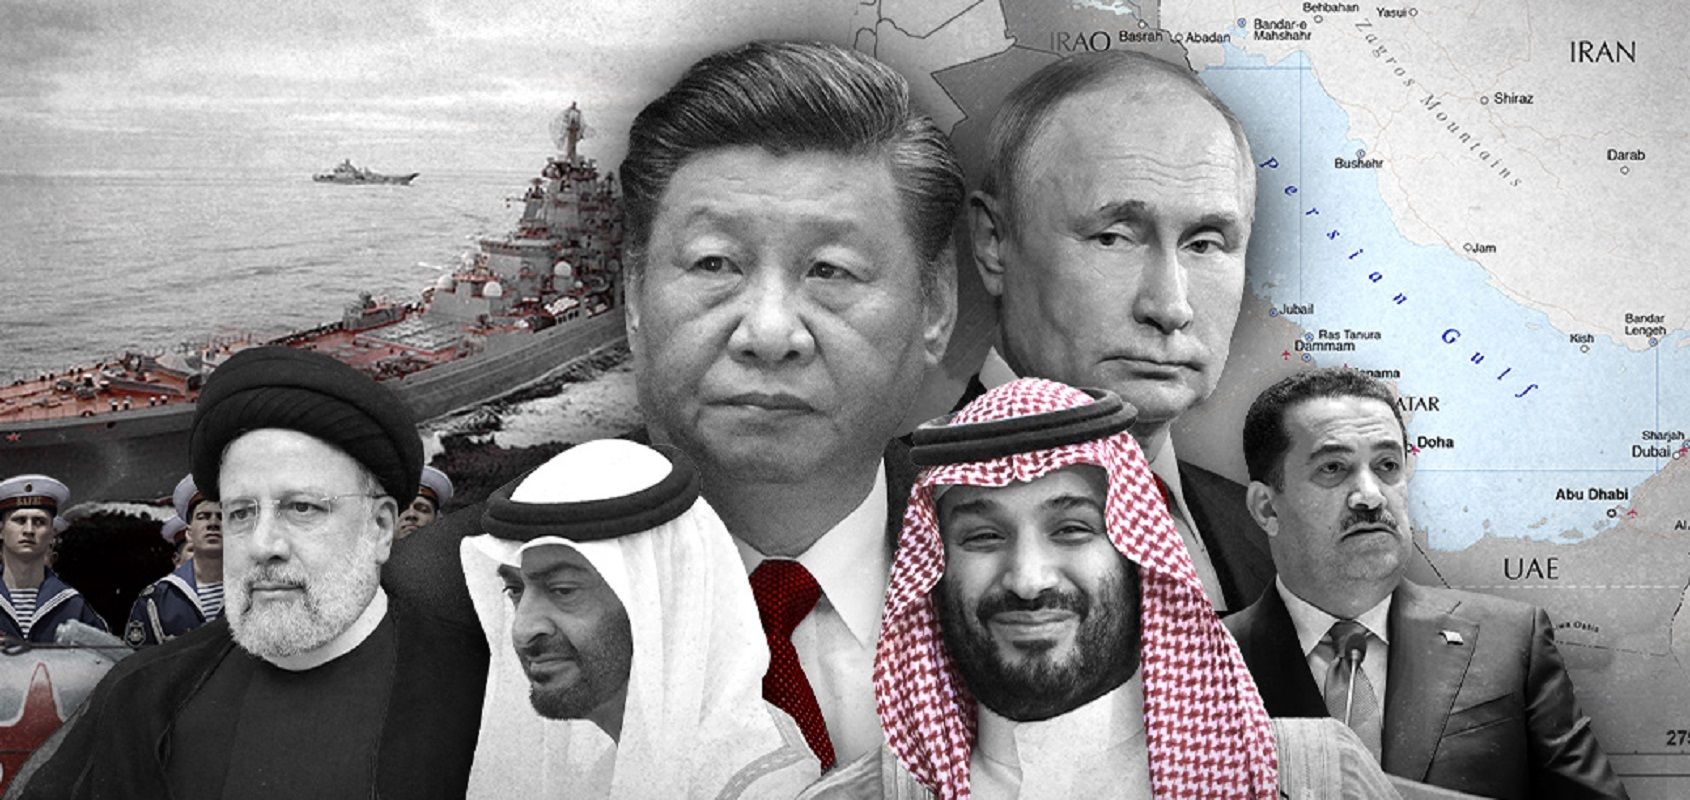 مثلث روسیه، ایران چین؛ ائتلاف سنگین علیه واشنگتن / معمای فروپاشی هژمونی آمریکا!